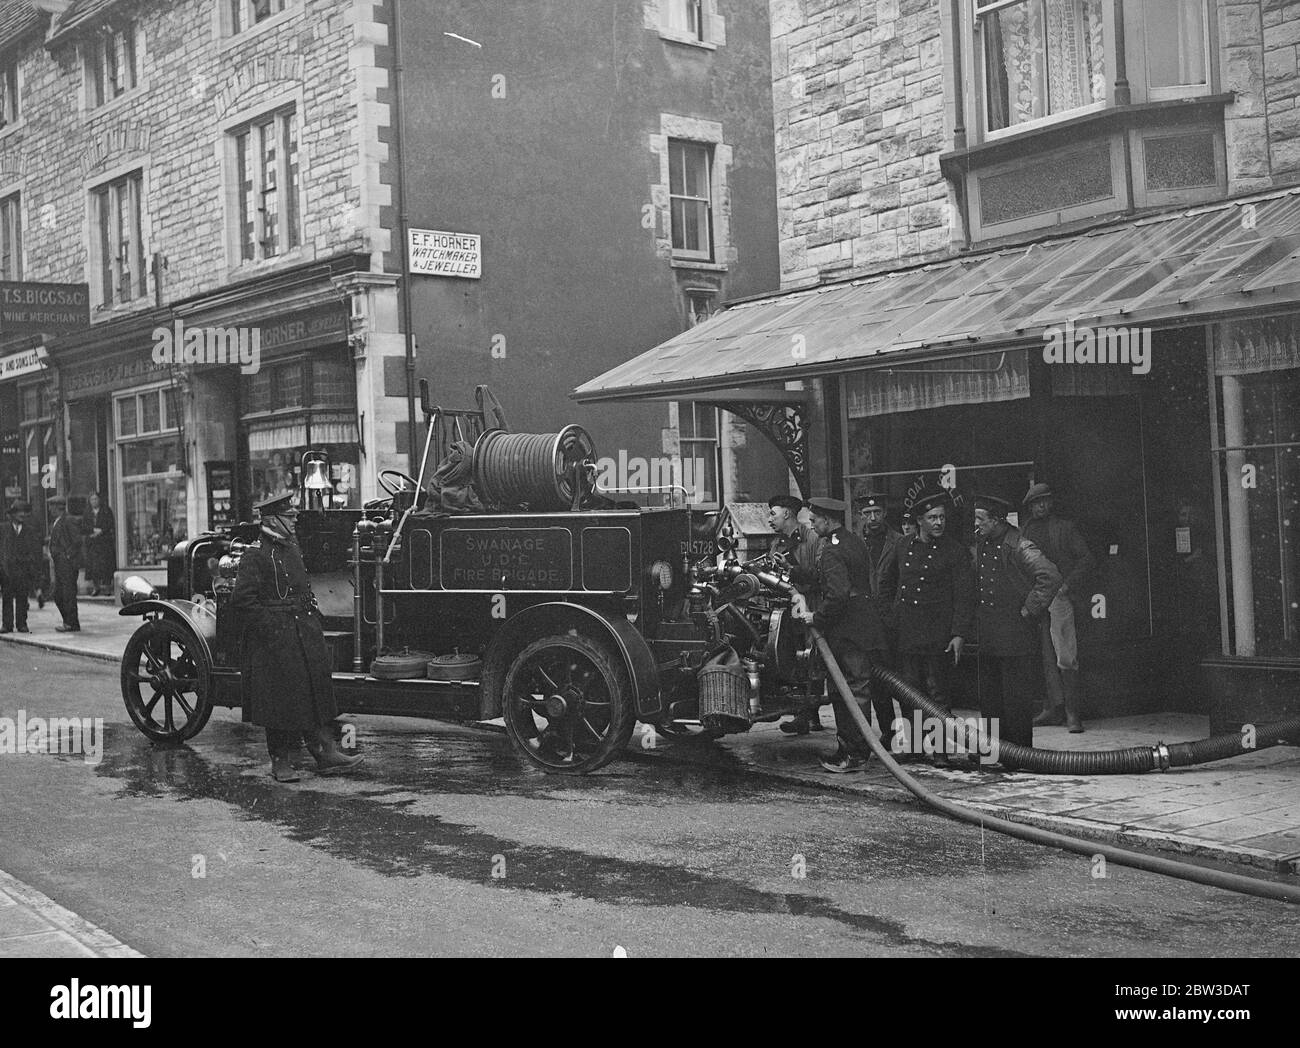 Die Feuerwehr pumpt Wasser aus den Geschäften nach einem schweren Hochwasser in Swanage . Feuerwehrleute Pumpen das Wasser aus einem überfluteten Geschäft in der High Street in Swanage, Dorset. 19. November 1935 Stockfoto